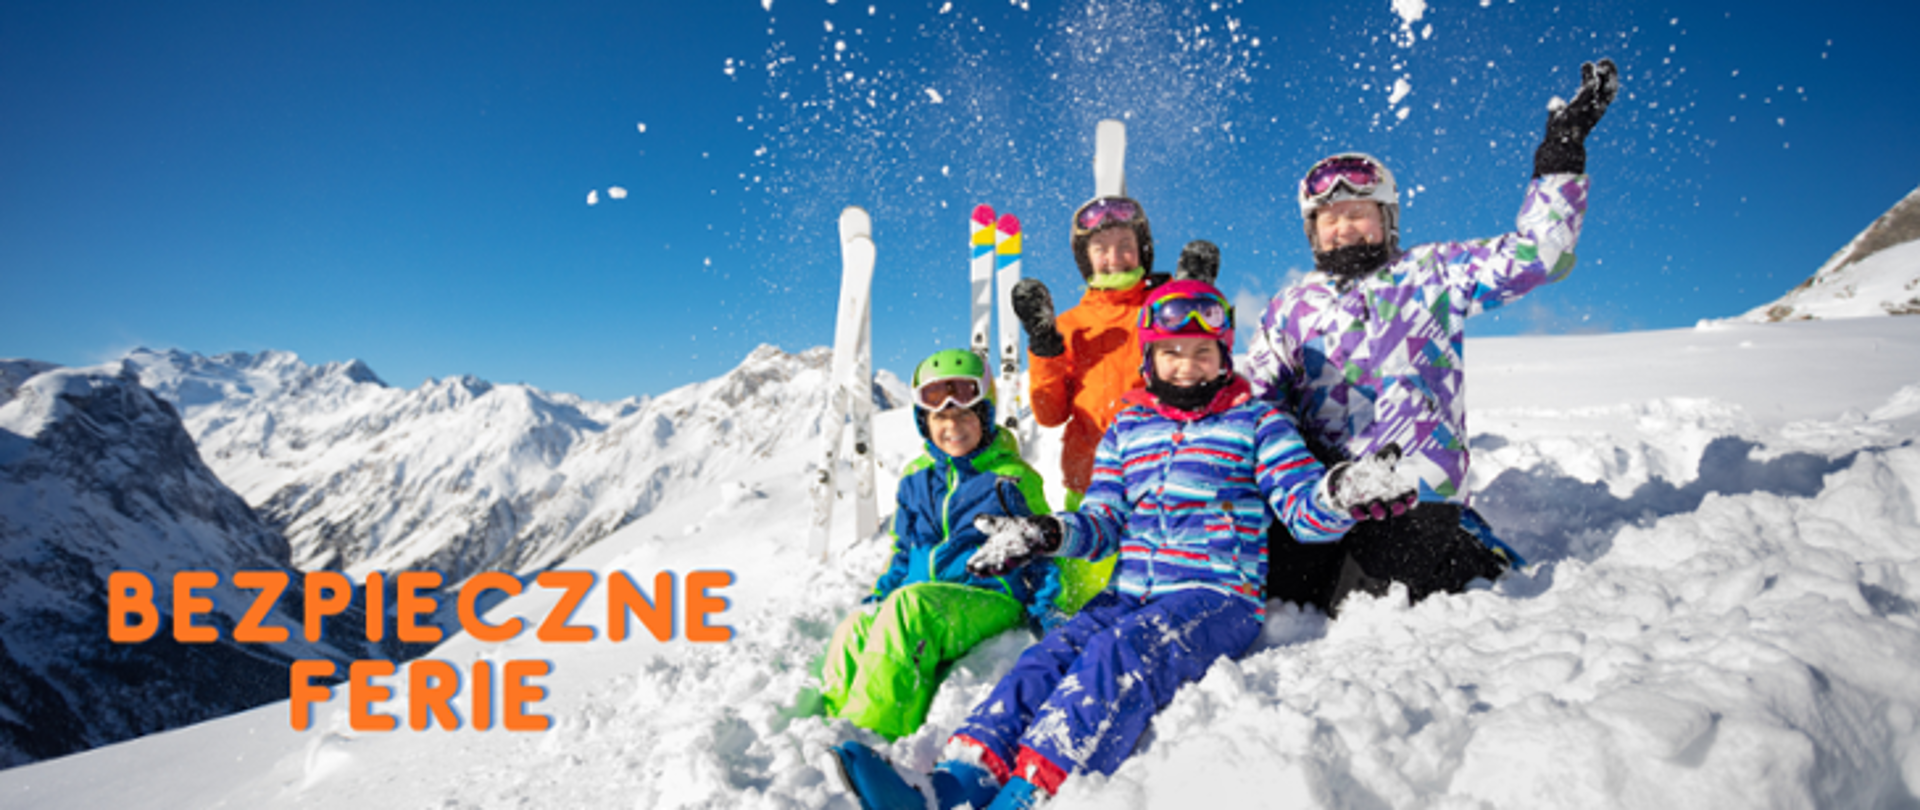 Czwórka dzieci siedzących na śniegu, obok nich narty a w tle góry. Z lewej strony napis Bezpieczne Ferie.